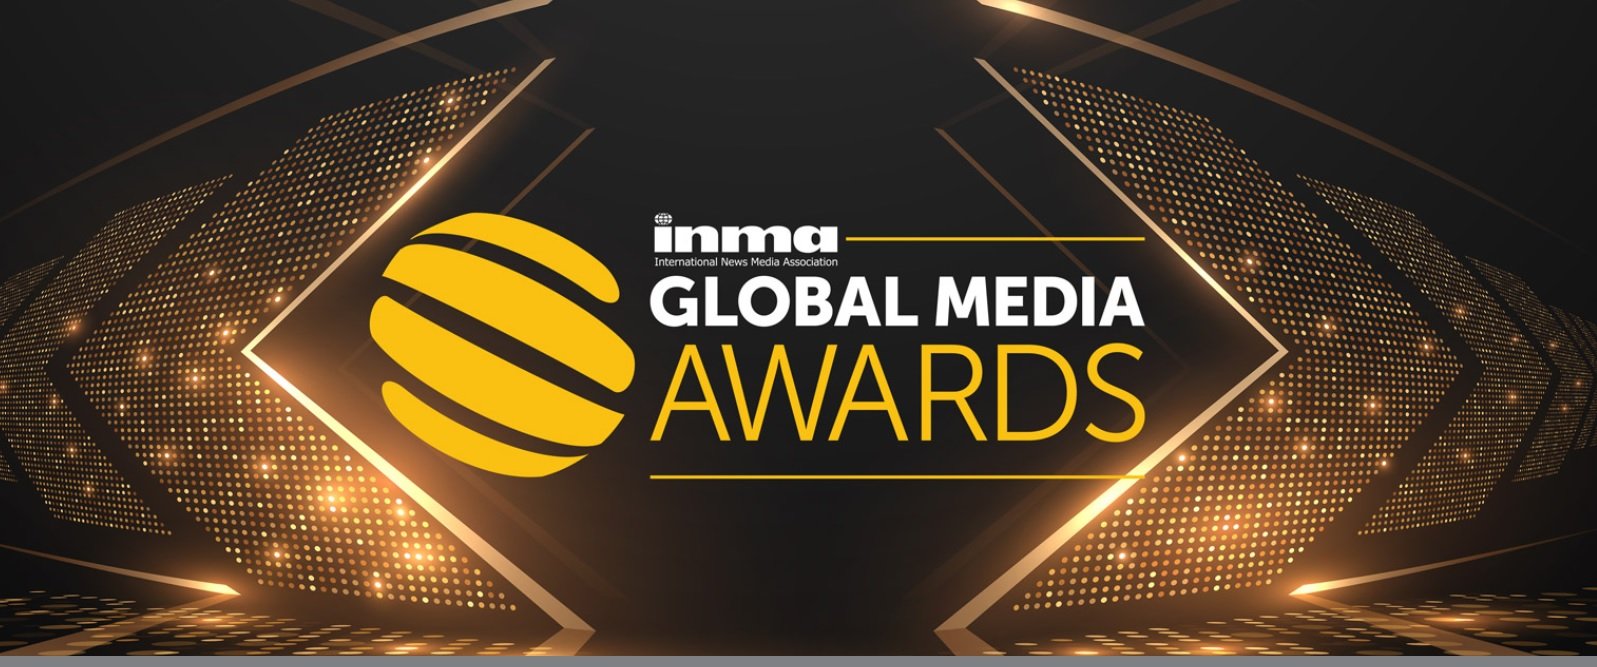 Global Media Awards INMA: Editora Globo é finalista com três iniciativas